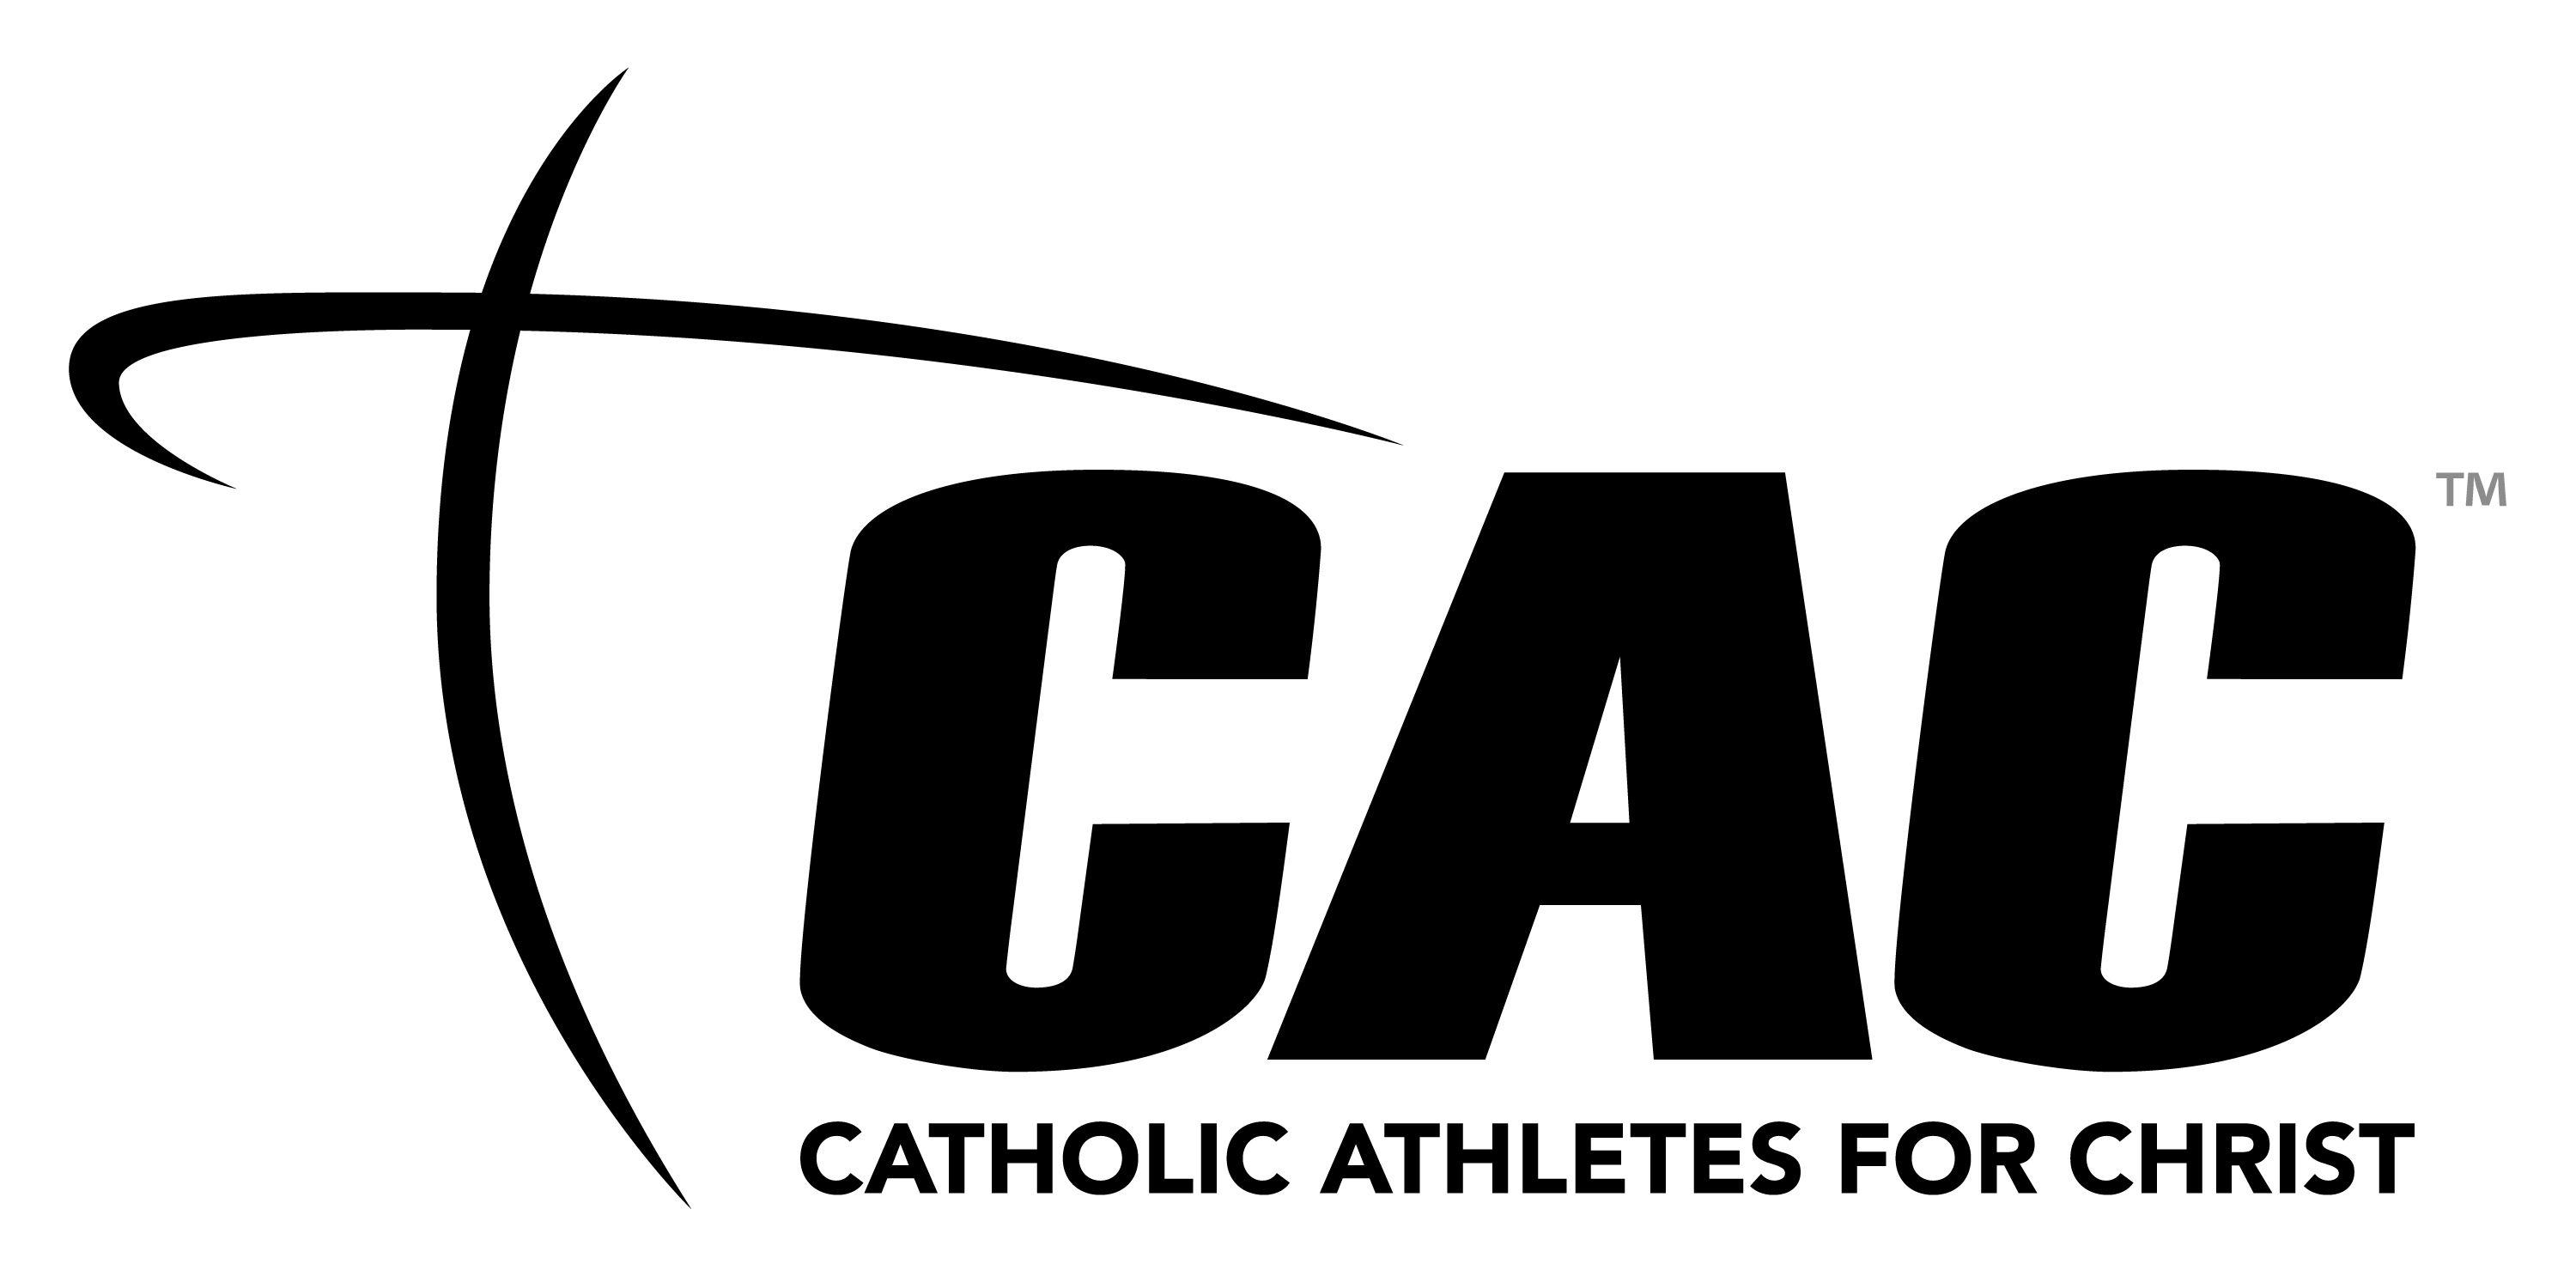 Black Electronic Logo - Downloads » Catholic Athletes for Christ